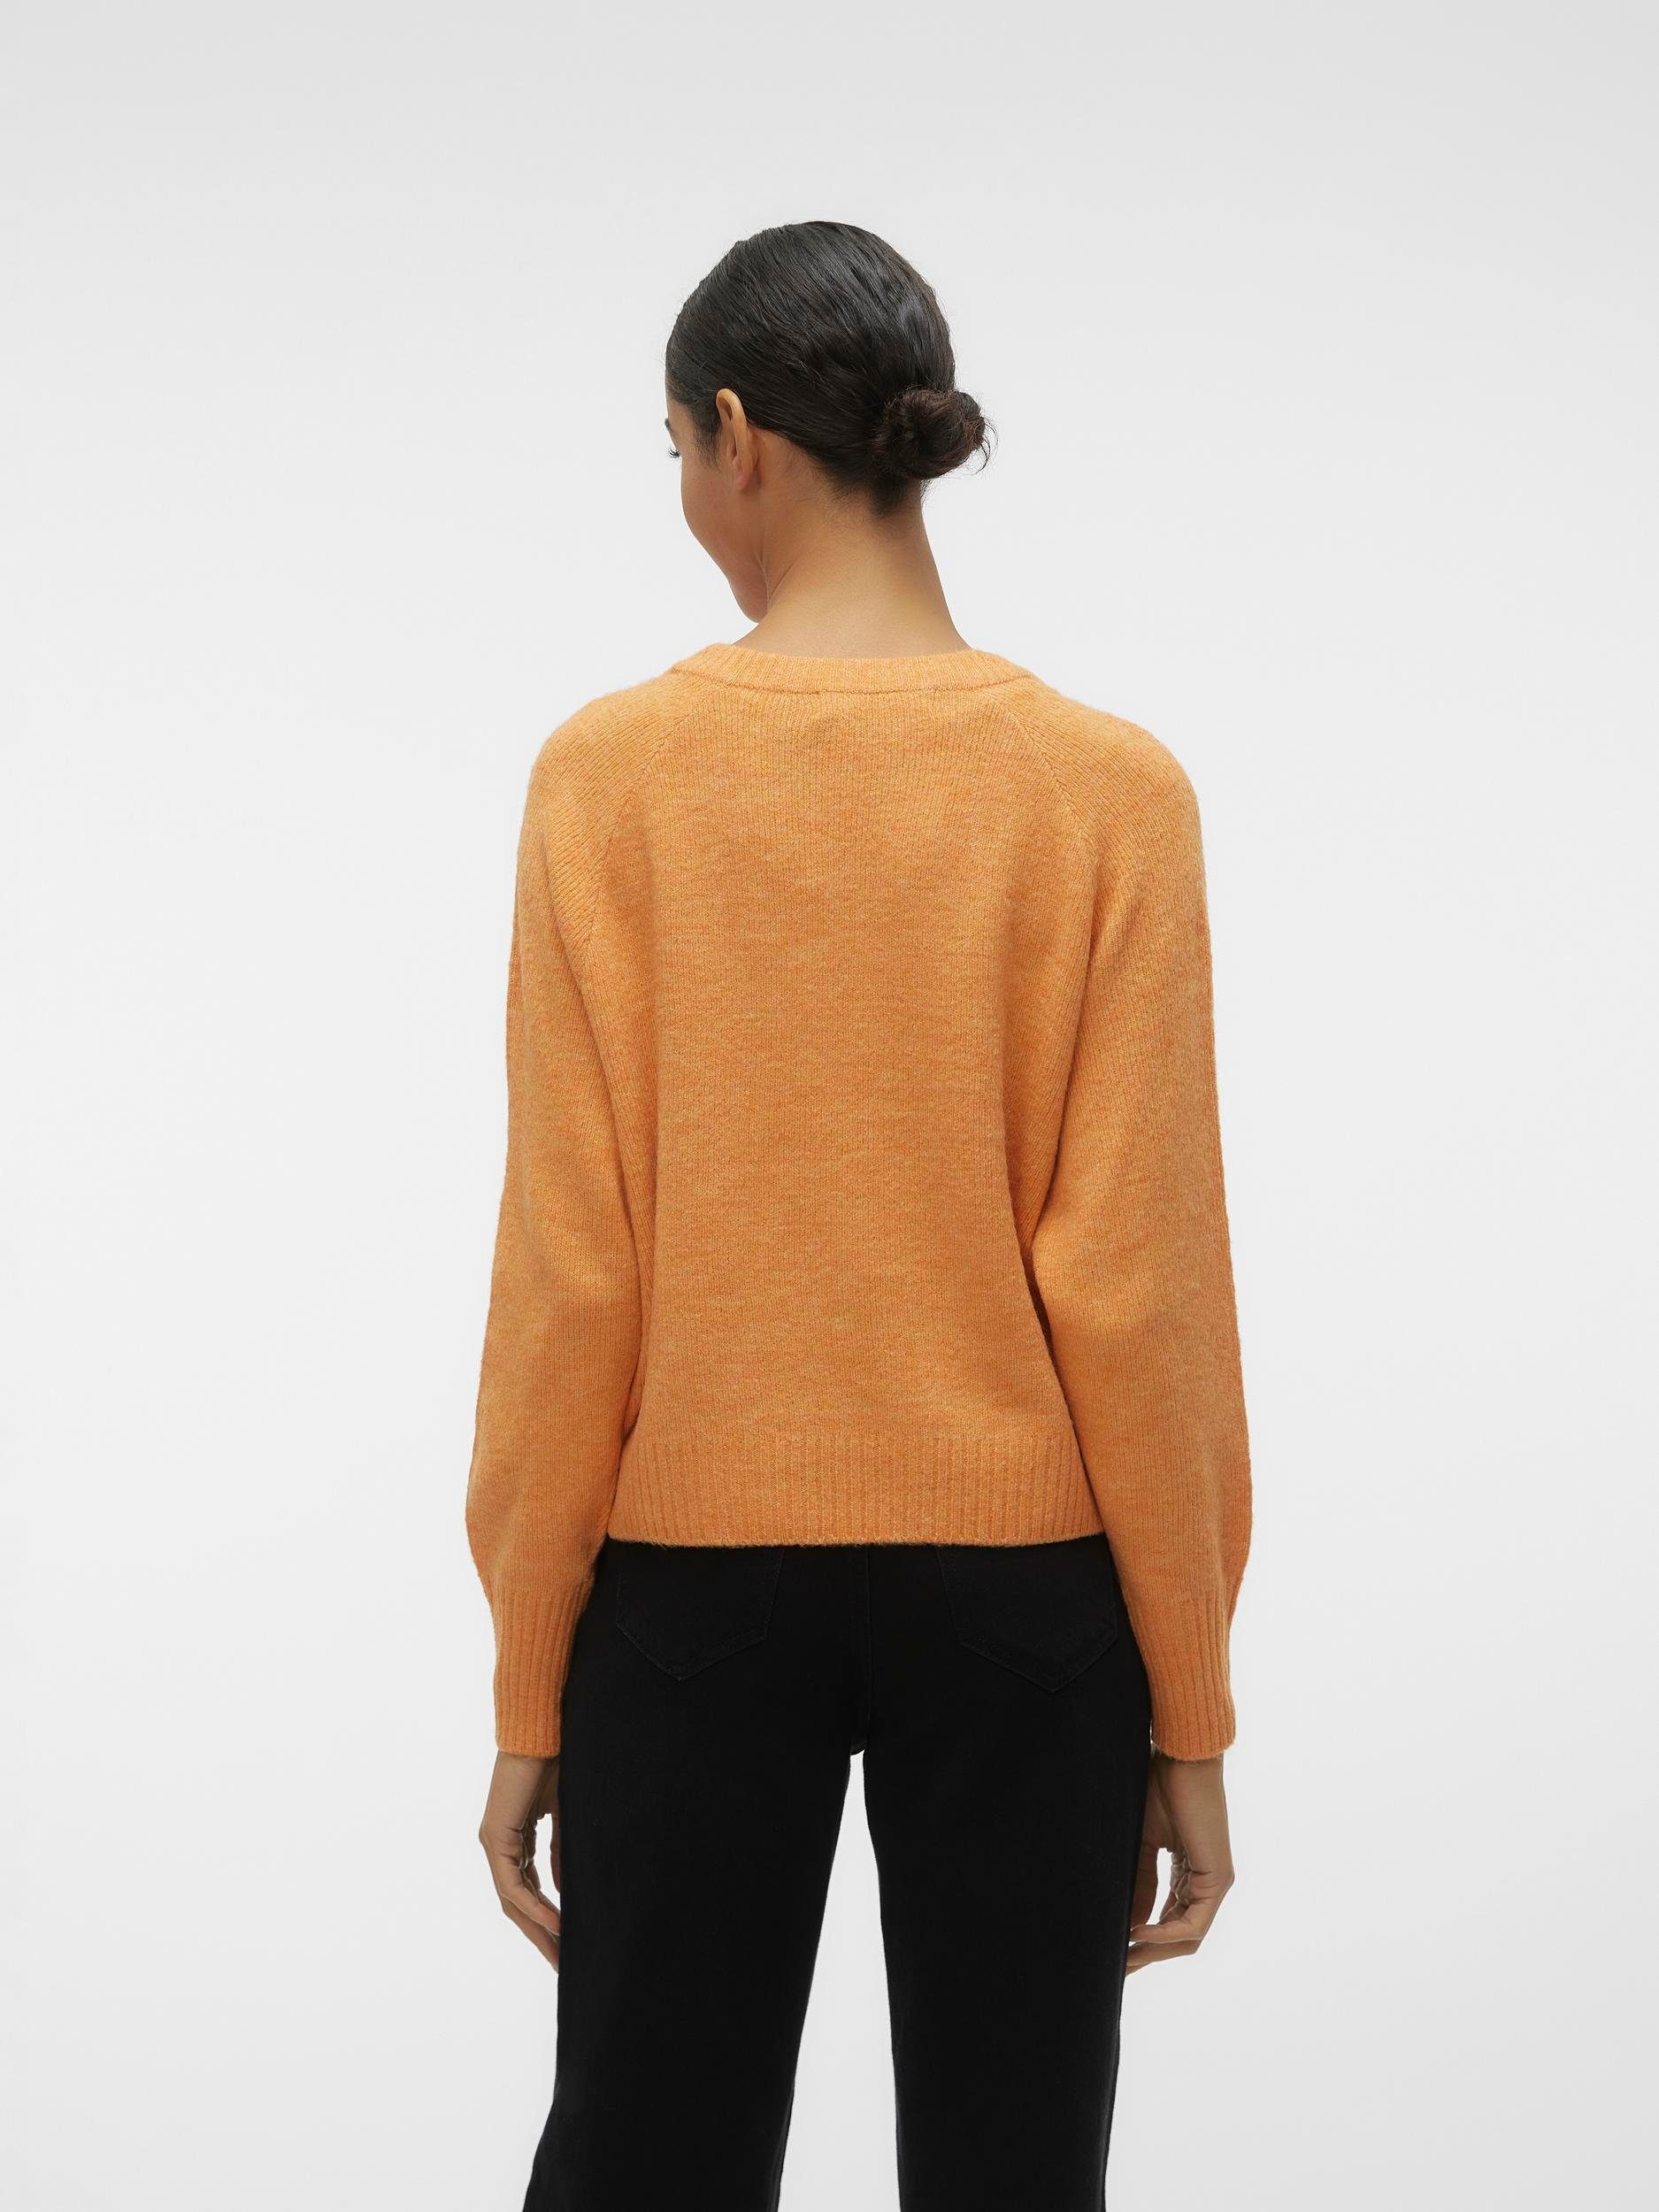 Tangerine LS MELANGE VMELLYLEFILE Moda Detail:W V-NECK PULLOVER Vero V-Ausschnitt-Pullover